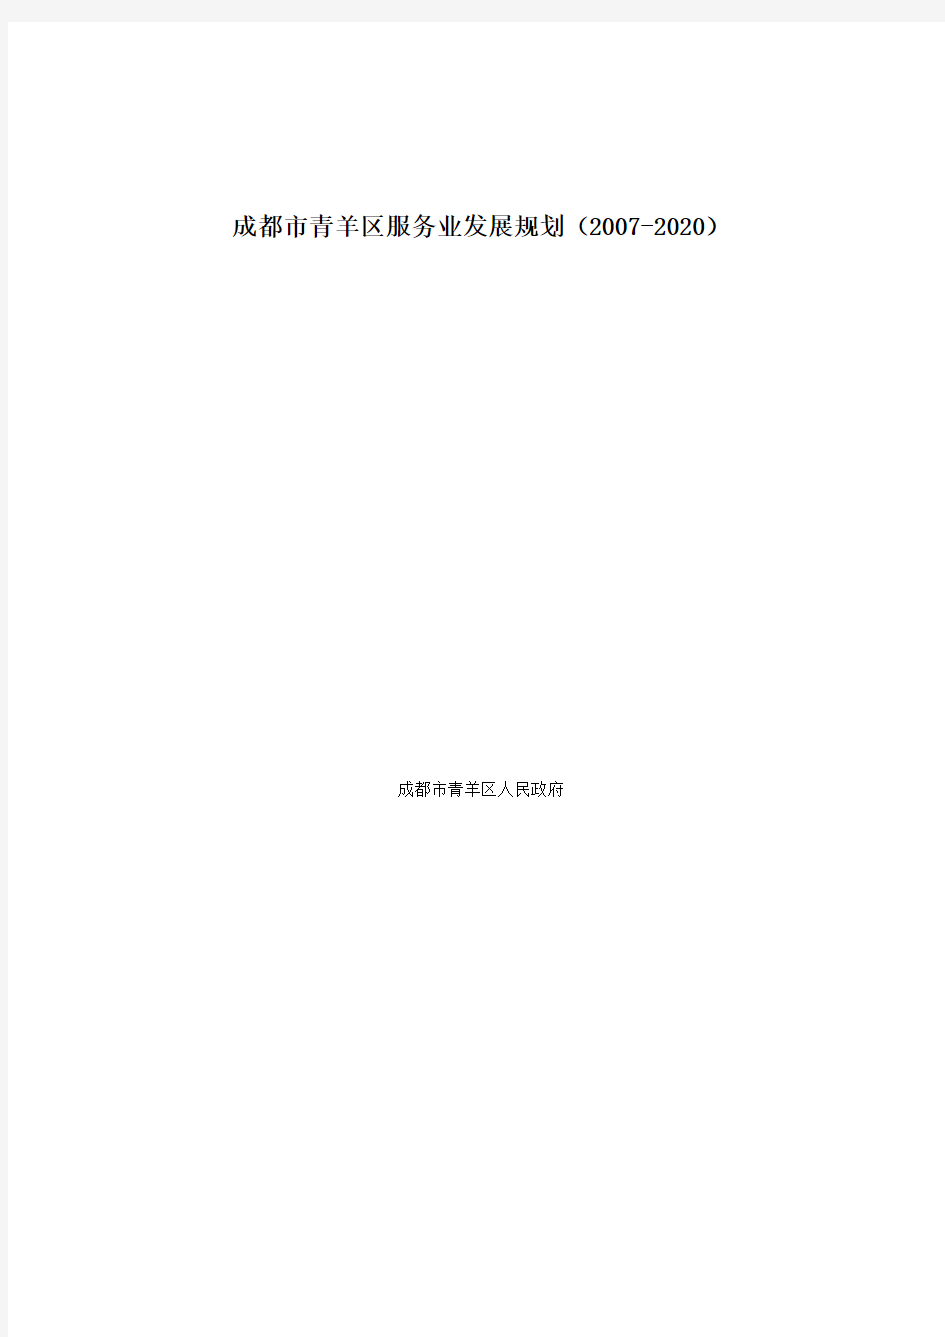 成都市青羊区服务业发展规划(2007-2020)